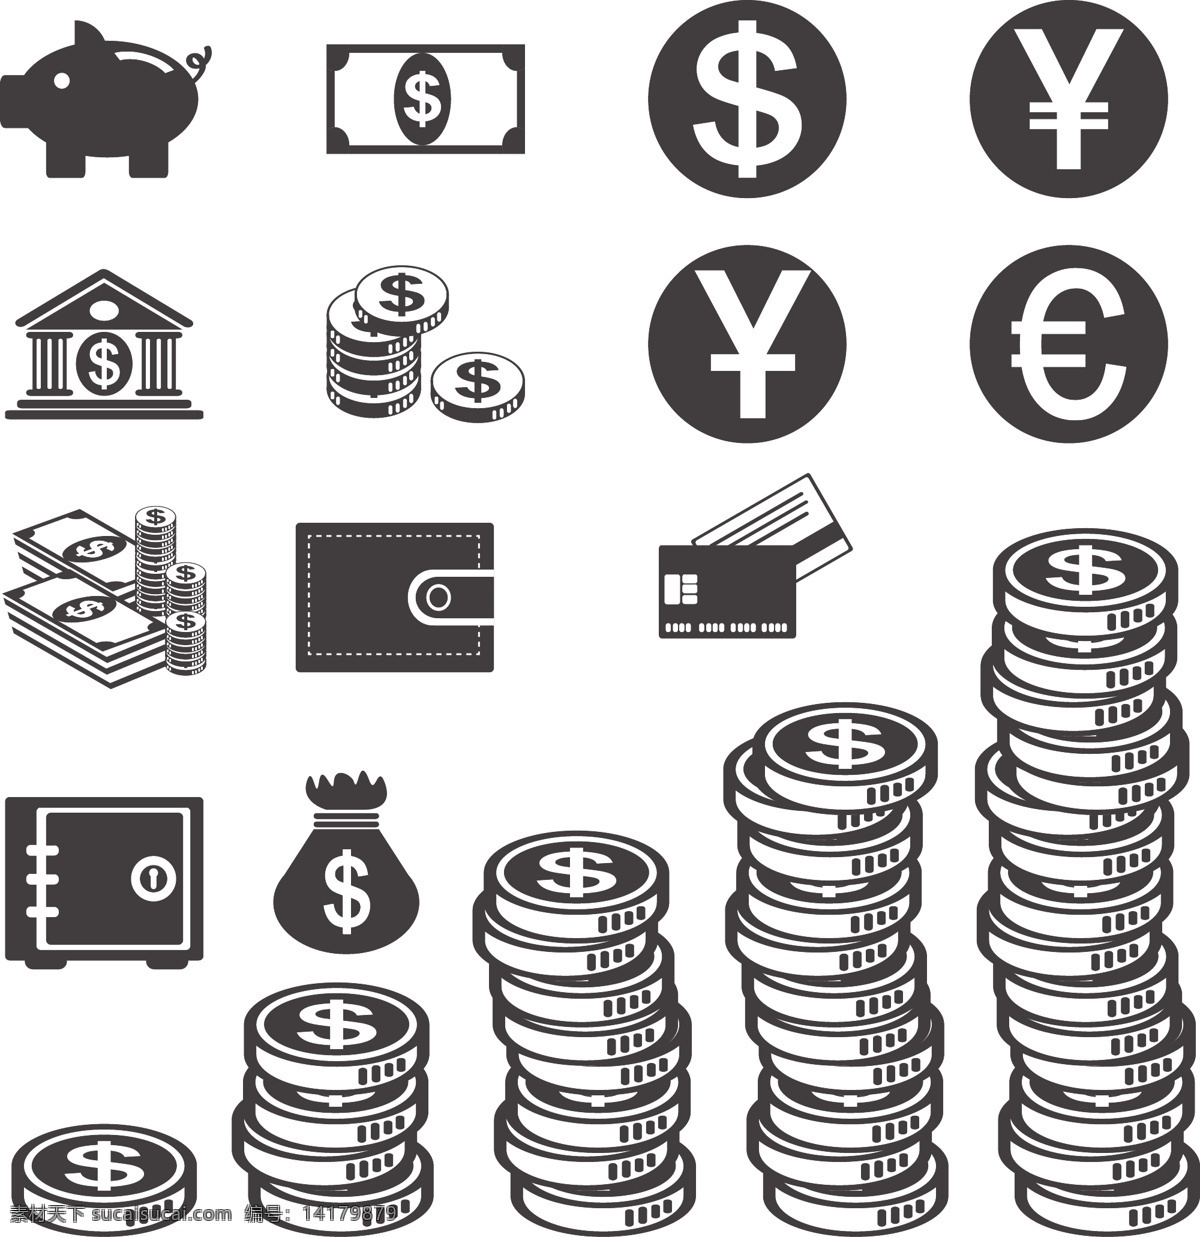 美元 符号 图标 矢量 模板下载 美元符号 金融货币 金融符号 储钱猪 金币 硬币 图形标识 标志图标 商务金融 矢量素材 白色